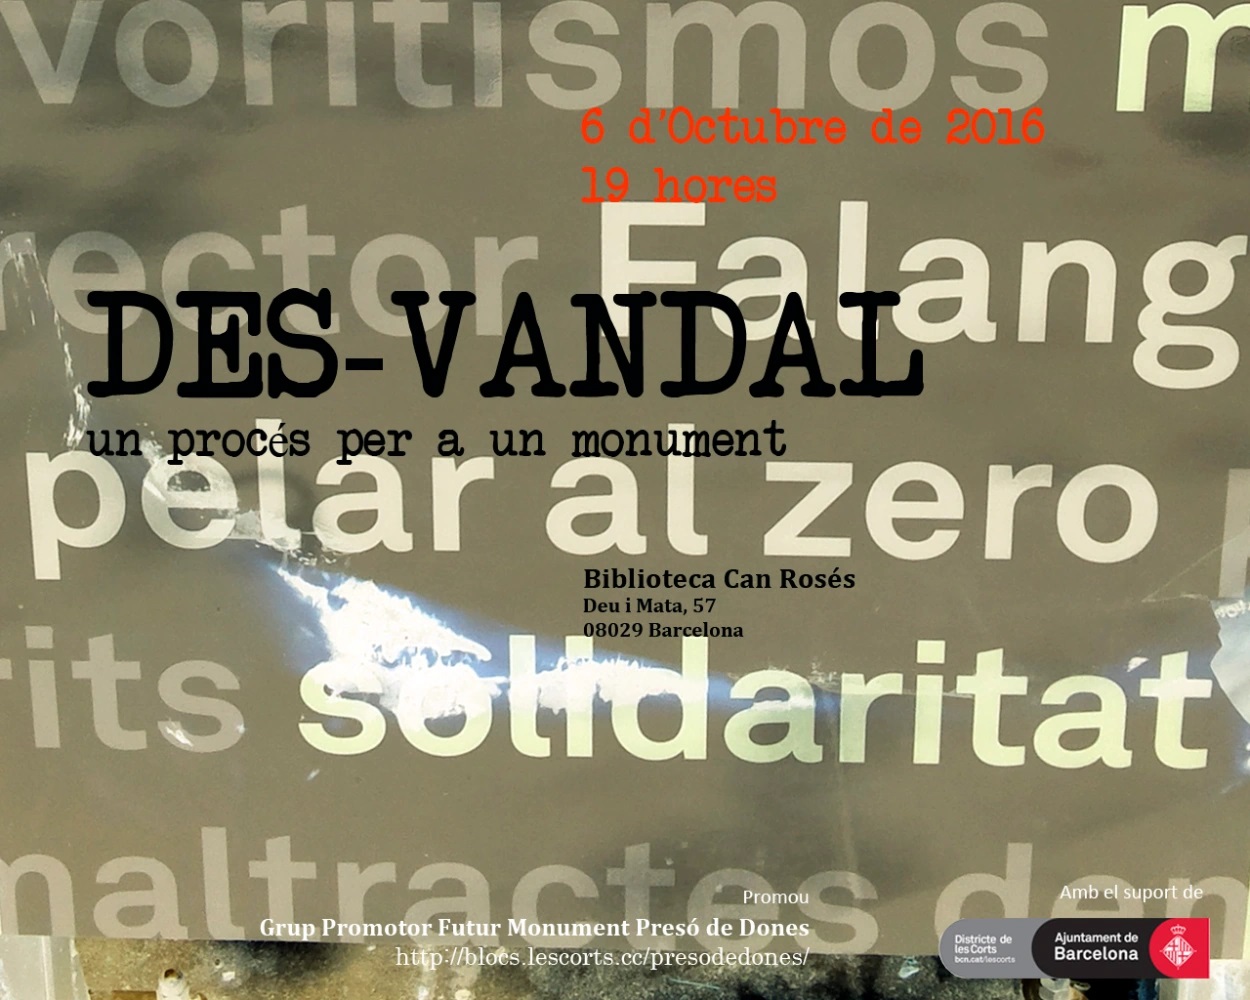 Cartel de la iniciativa "Des-vandal·", 2016